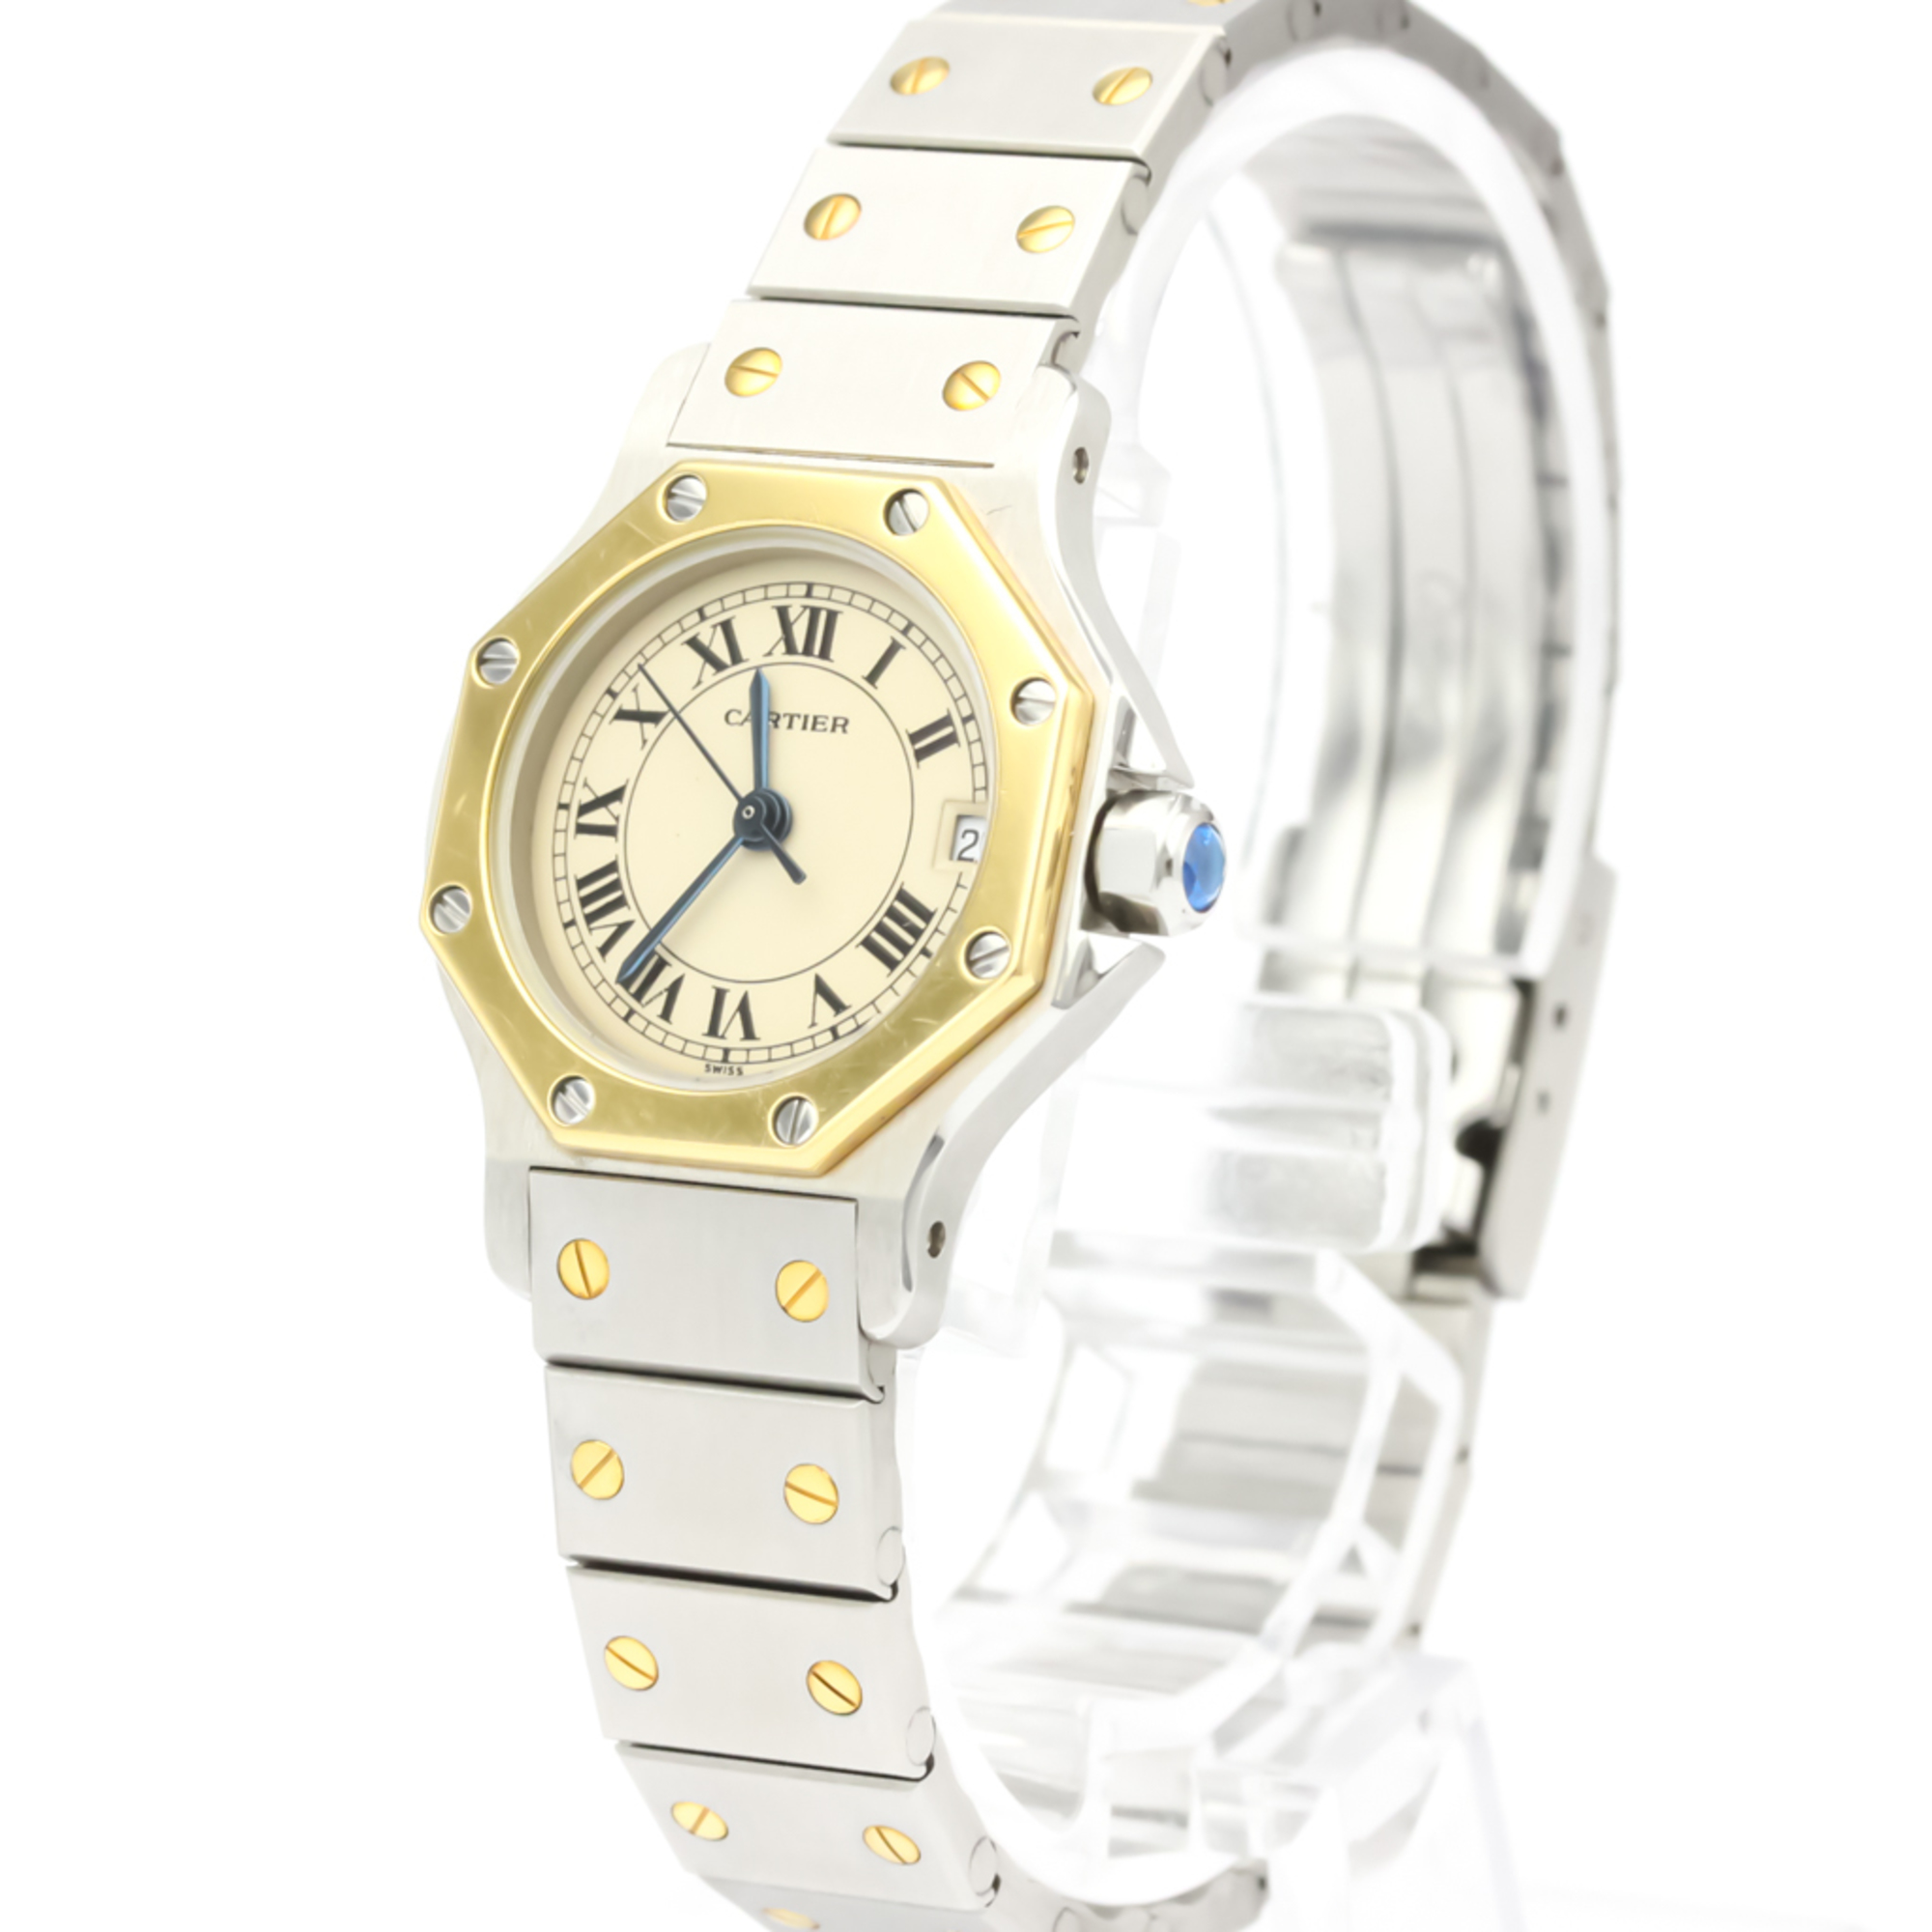 Cartier Santos Octagon Quartz Stainless Steel,Yellow Gold (18K) Women's Dress Watch 187903